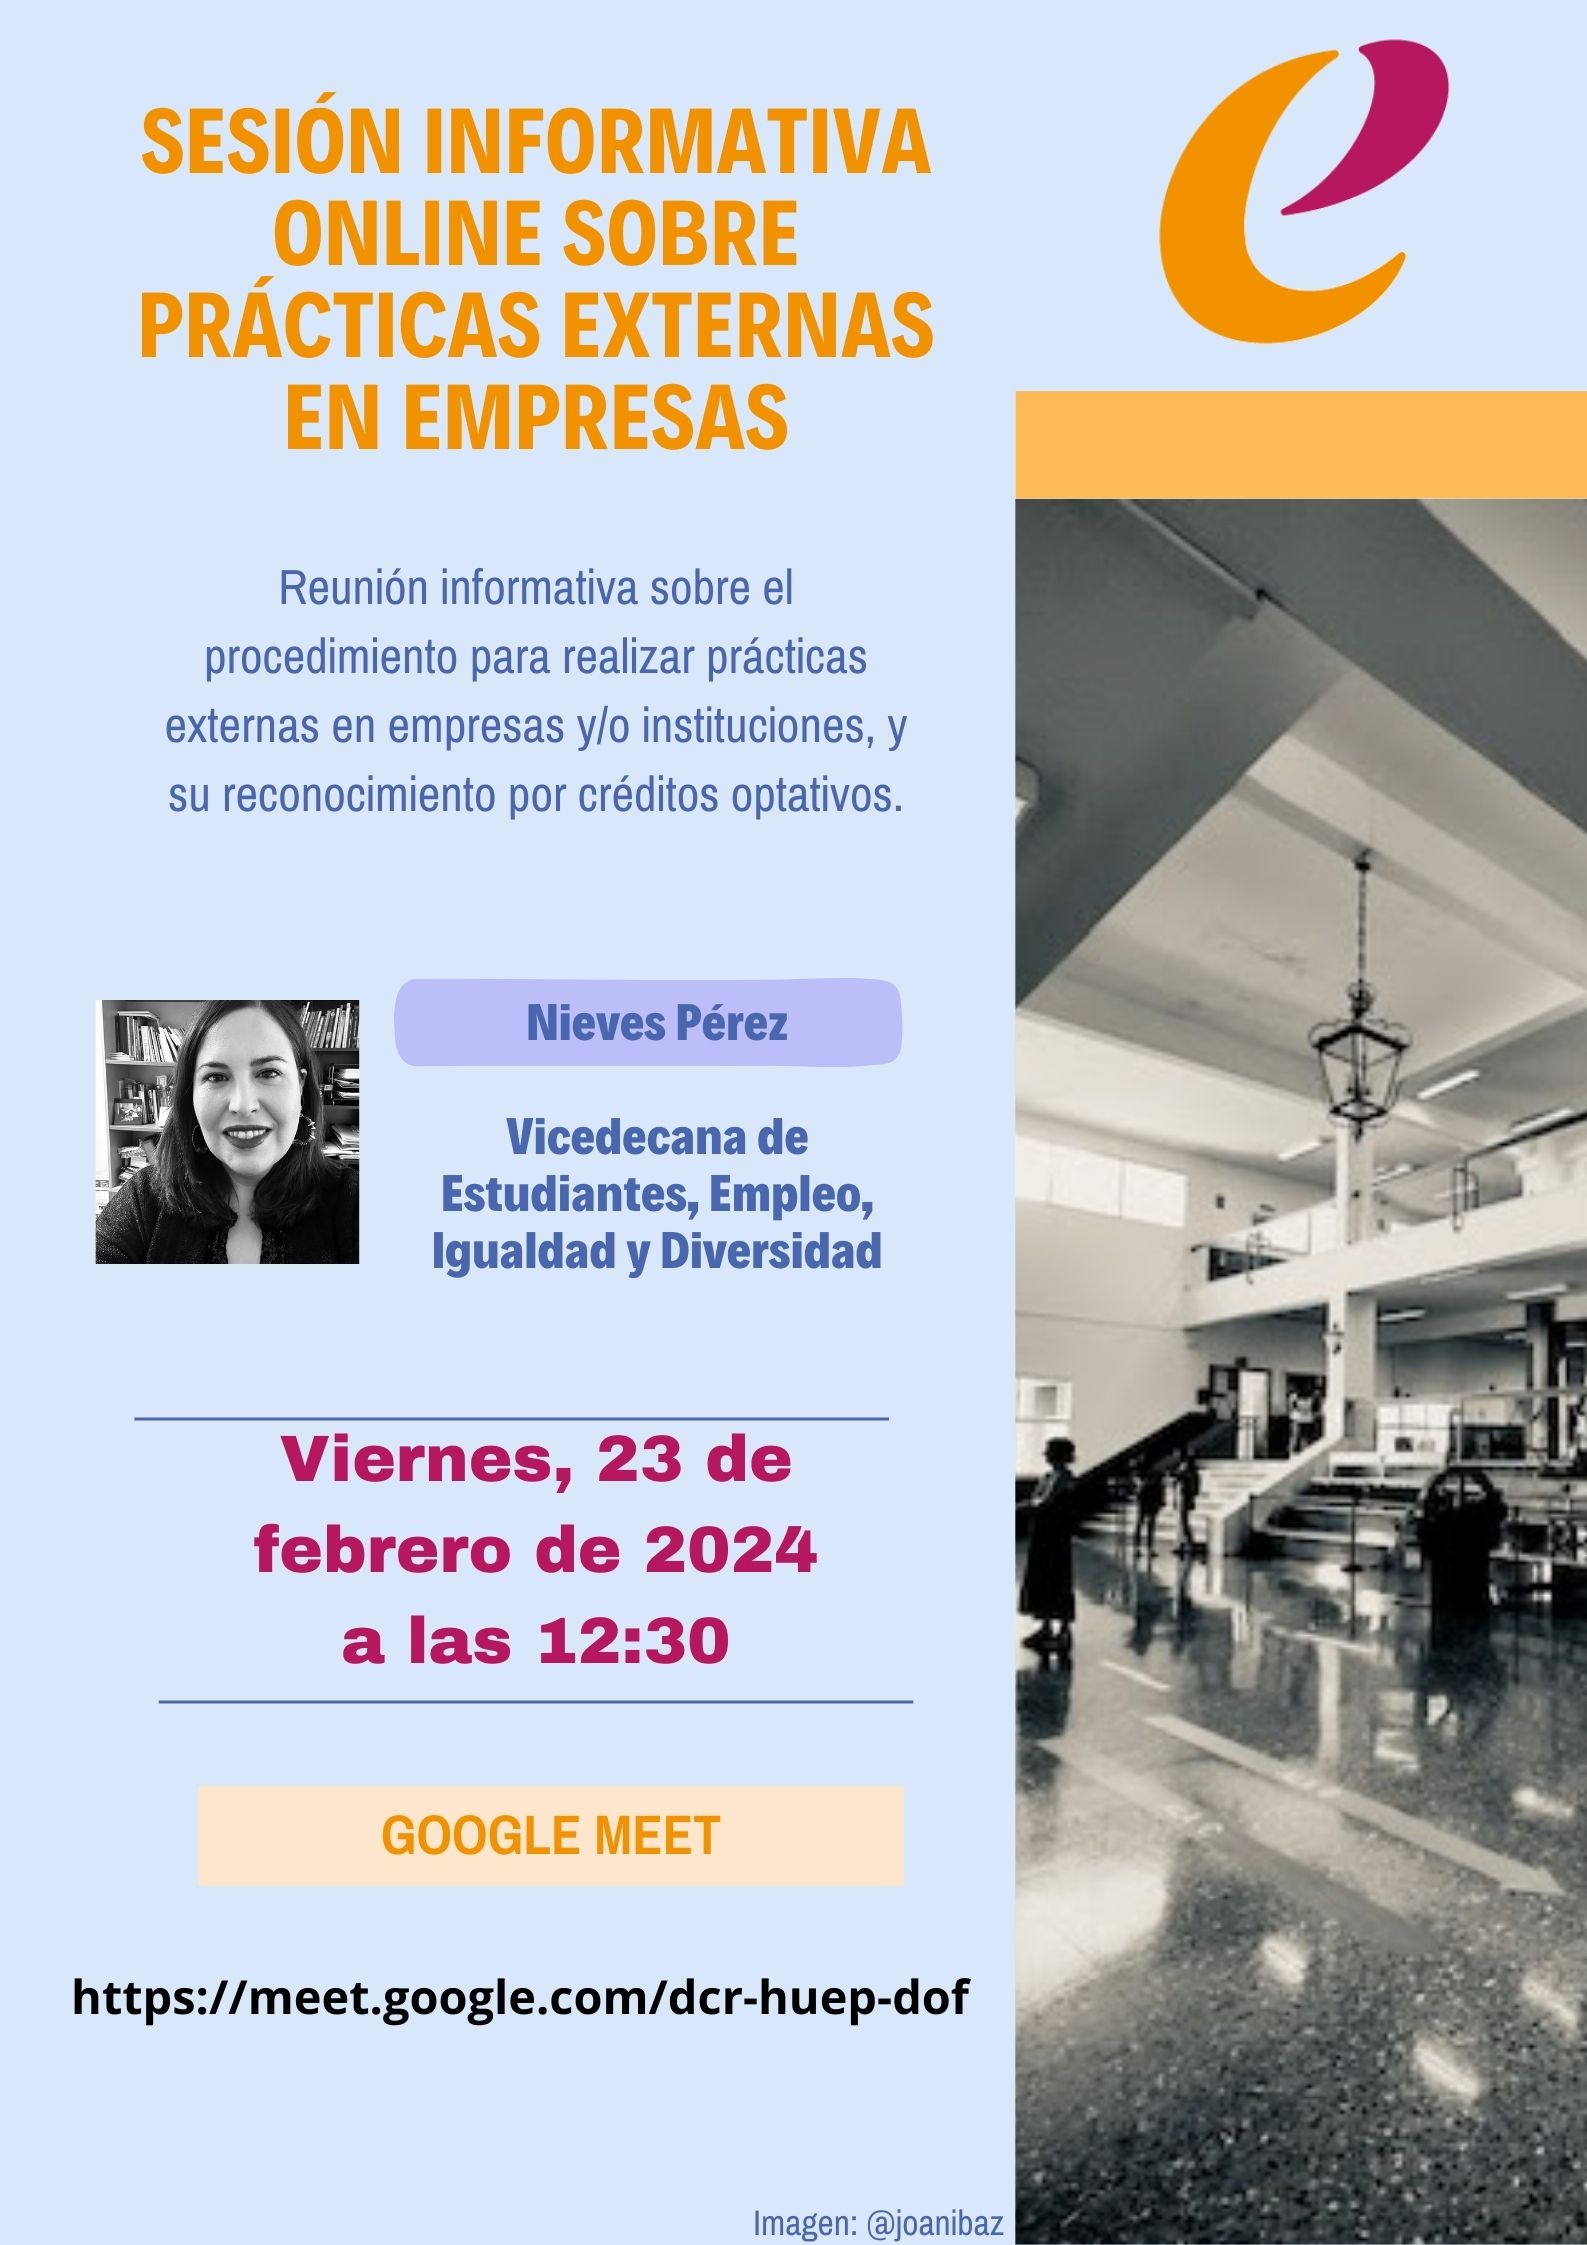 Cartel anunciador de la Sesión informativa sobre prácticas externas en empresas, a cargo de Nieves Pérez, Vicedecana 